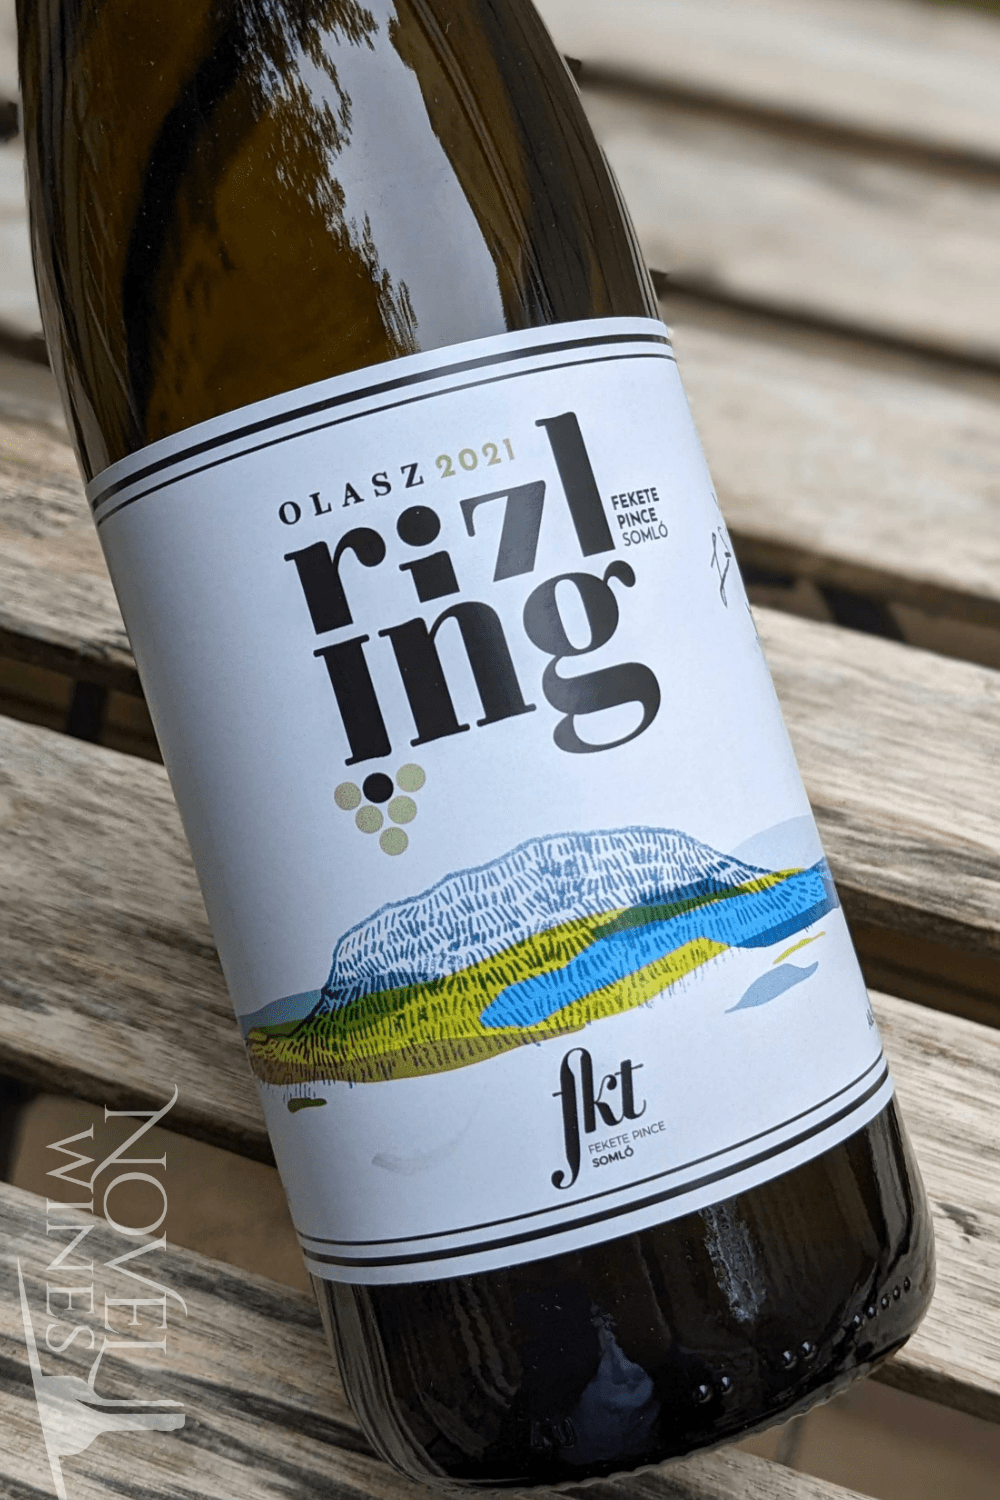 Novel Wines Fekete Pince Olaszrizling 2021, Hungary